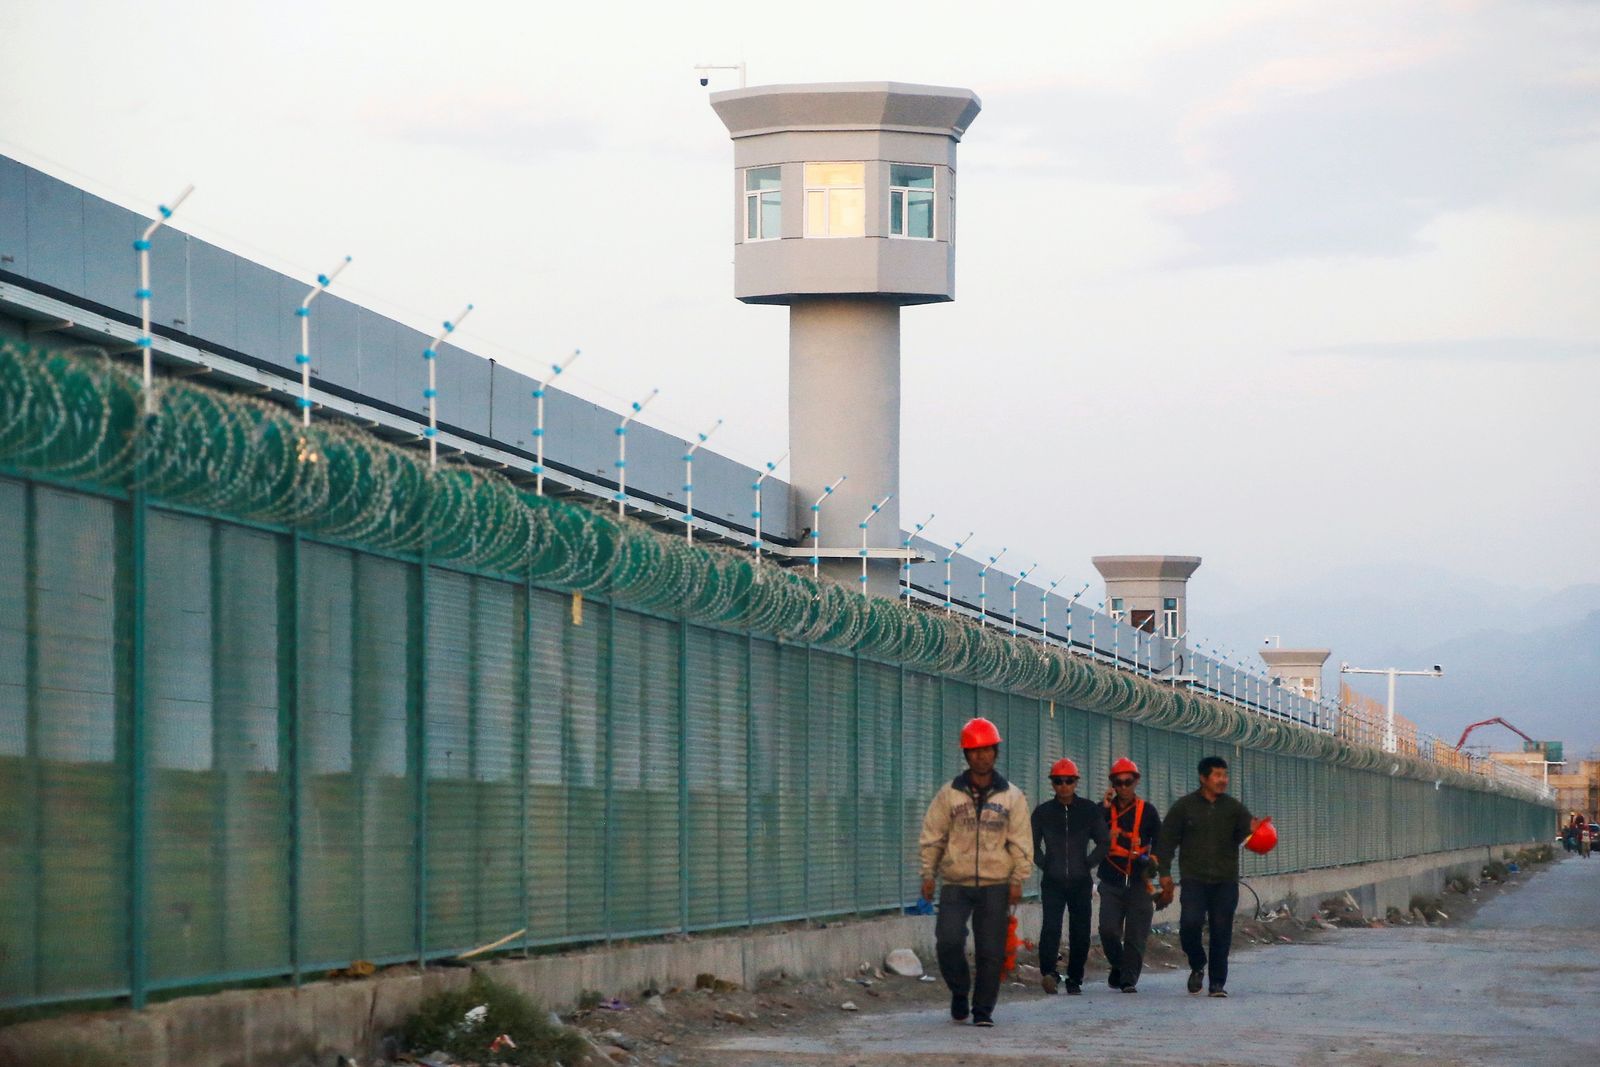 عمال يسيرون بالقرب من السياج المحيط لما يعرف رسمياً باسم مركز تعليم المهارات المهنية في دابانتشنغ  03/12/2020. - REUTERS